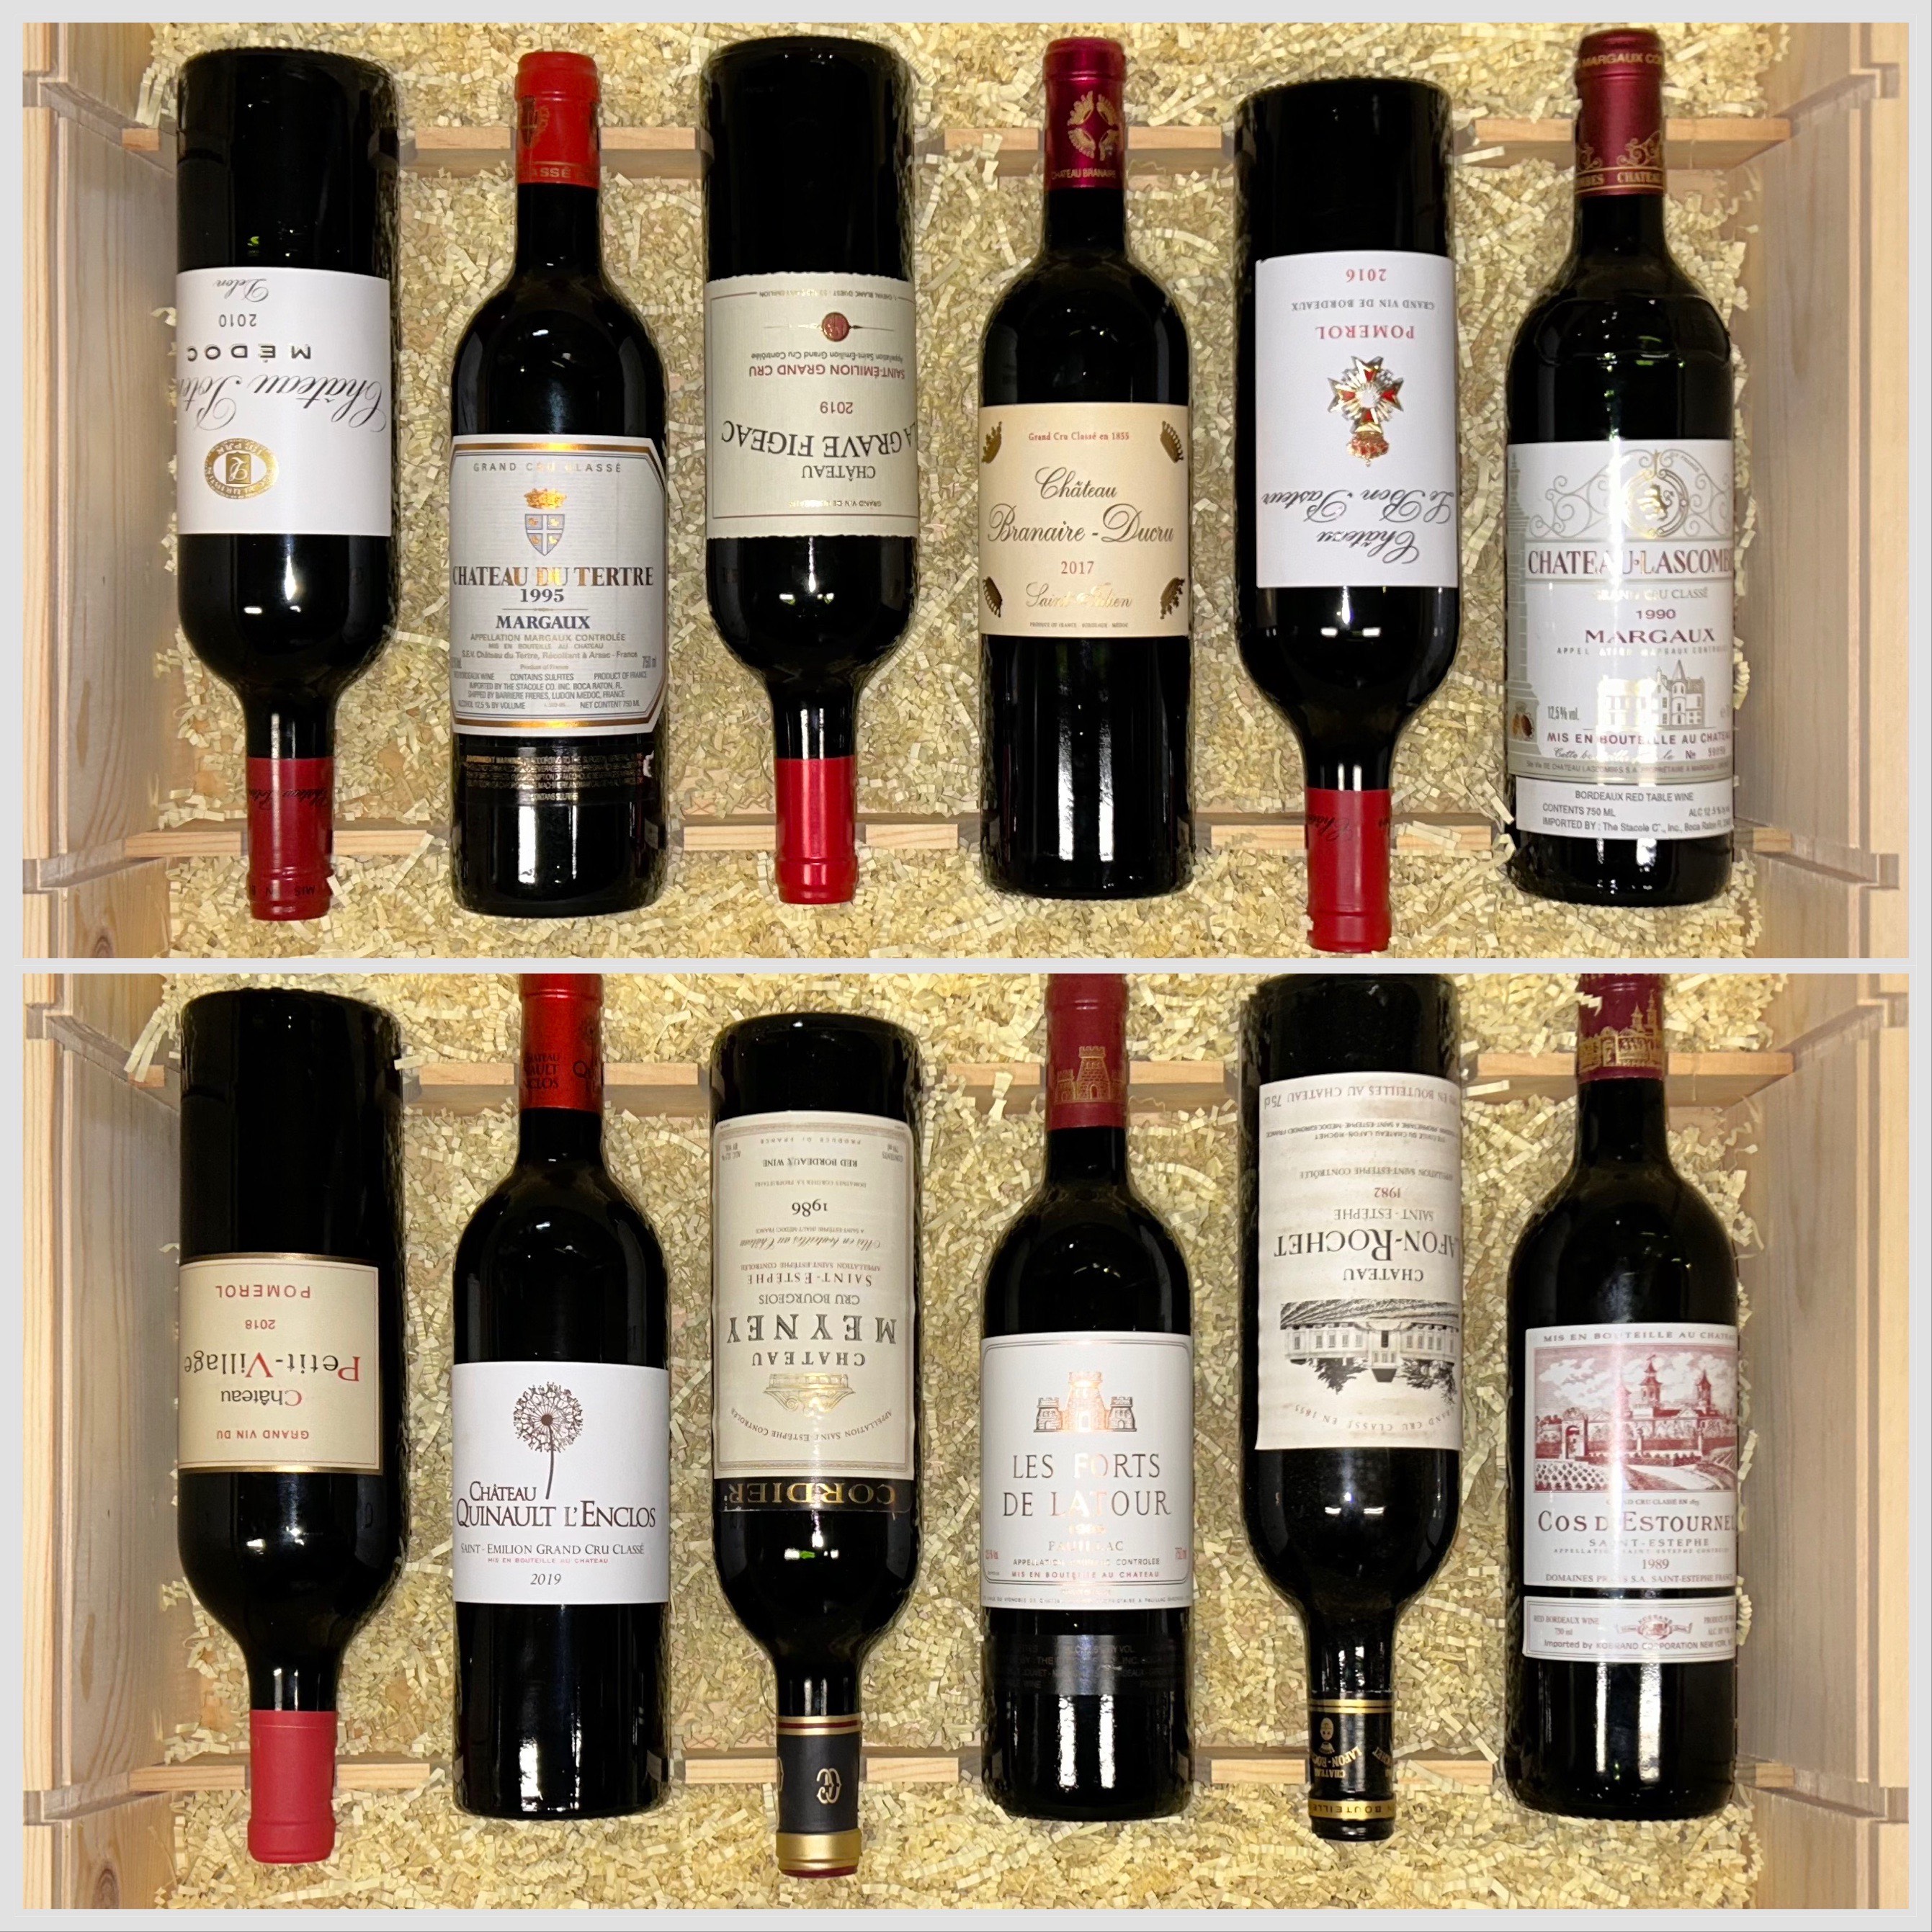 Bordeaux Lovers 12 Bottle Case #23A3 - click image for full description